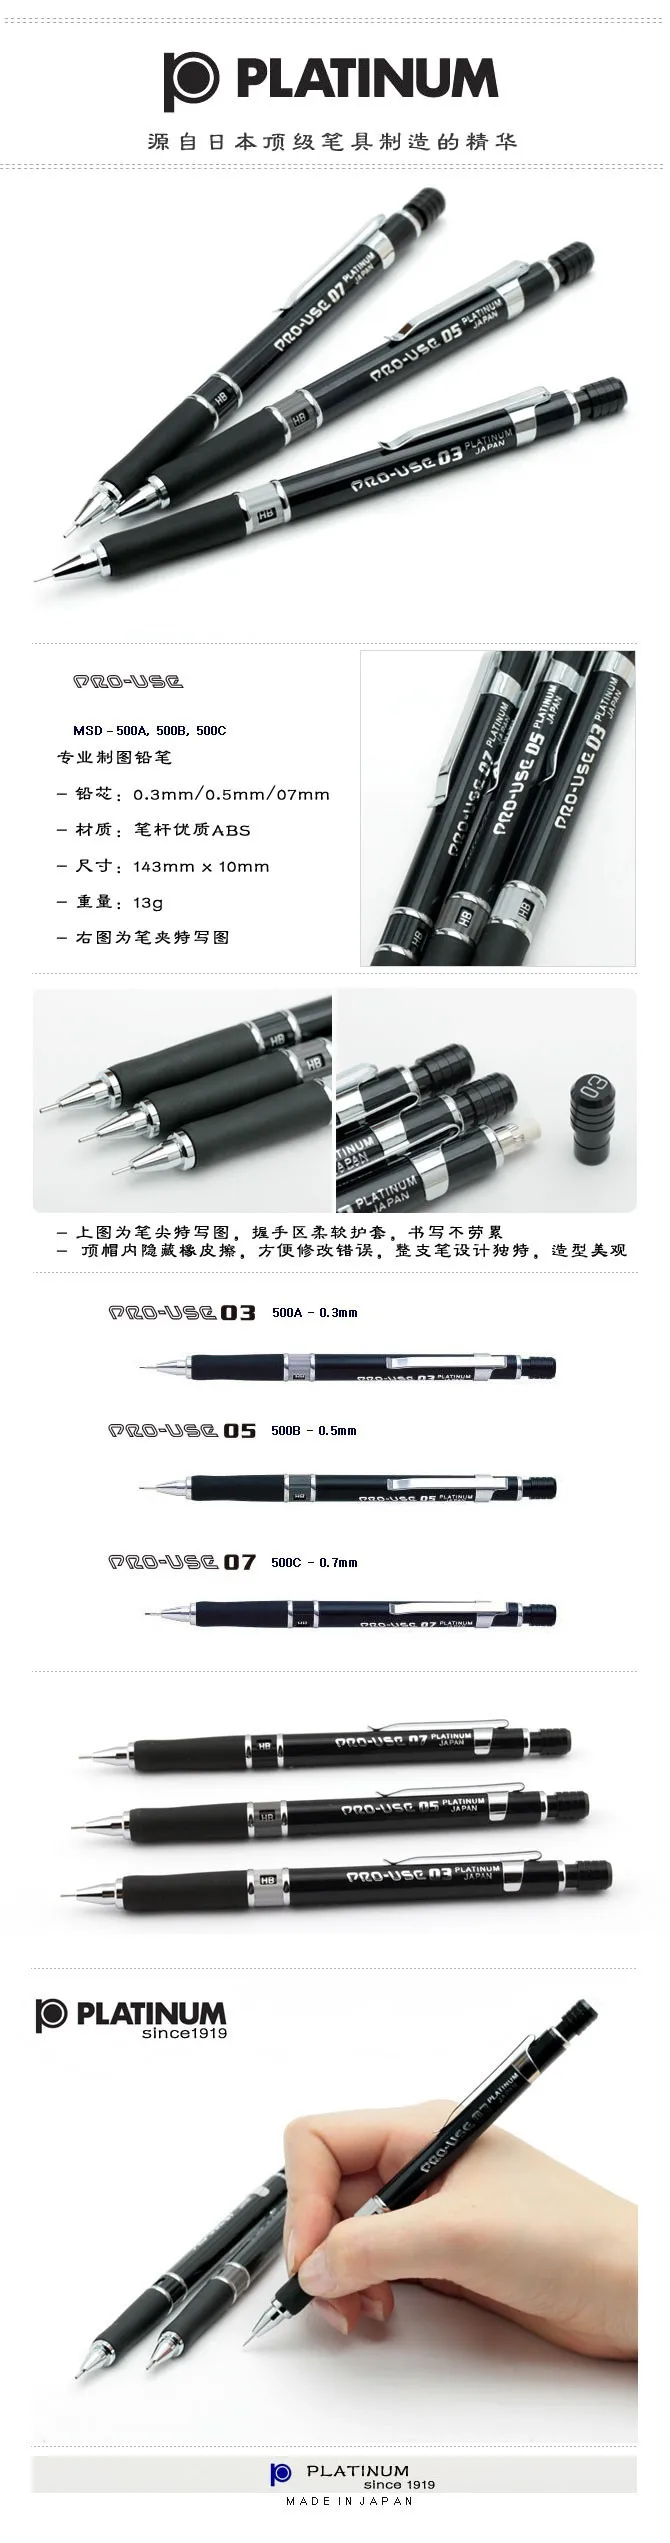 [Platinum] MSD-500 механический карандаш Специальный карандаш 0.3/0.5/0.7 мм механический карандаш Сделано в Японии классический рисунок специальный